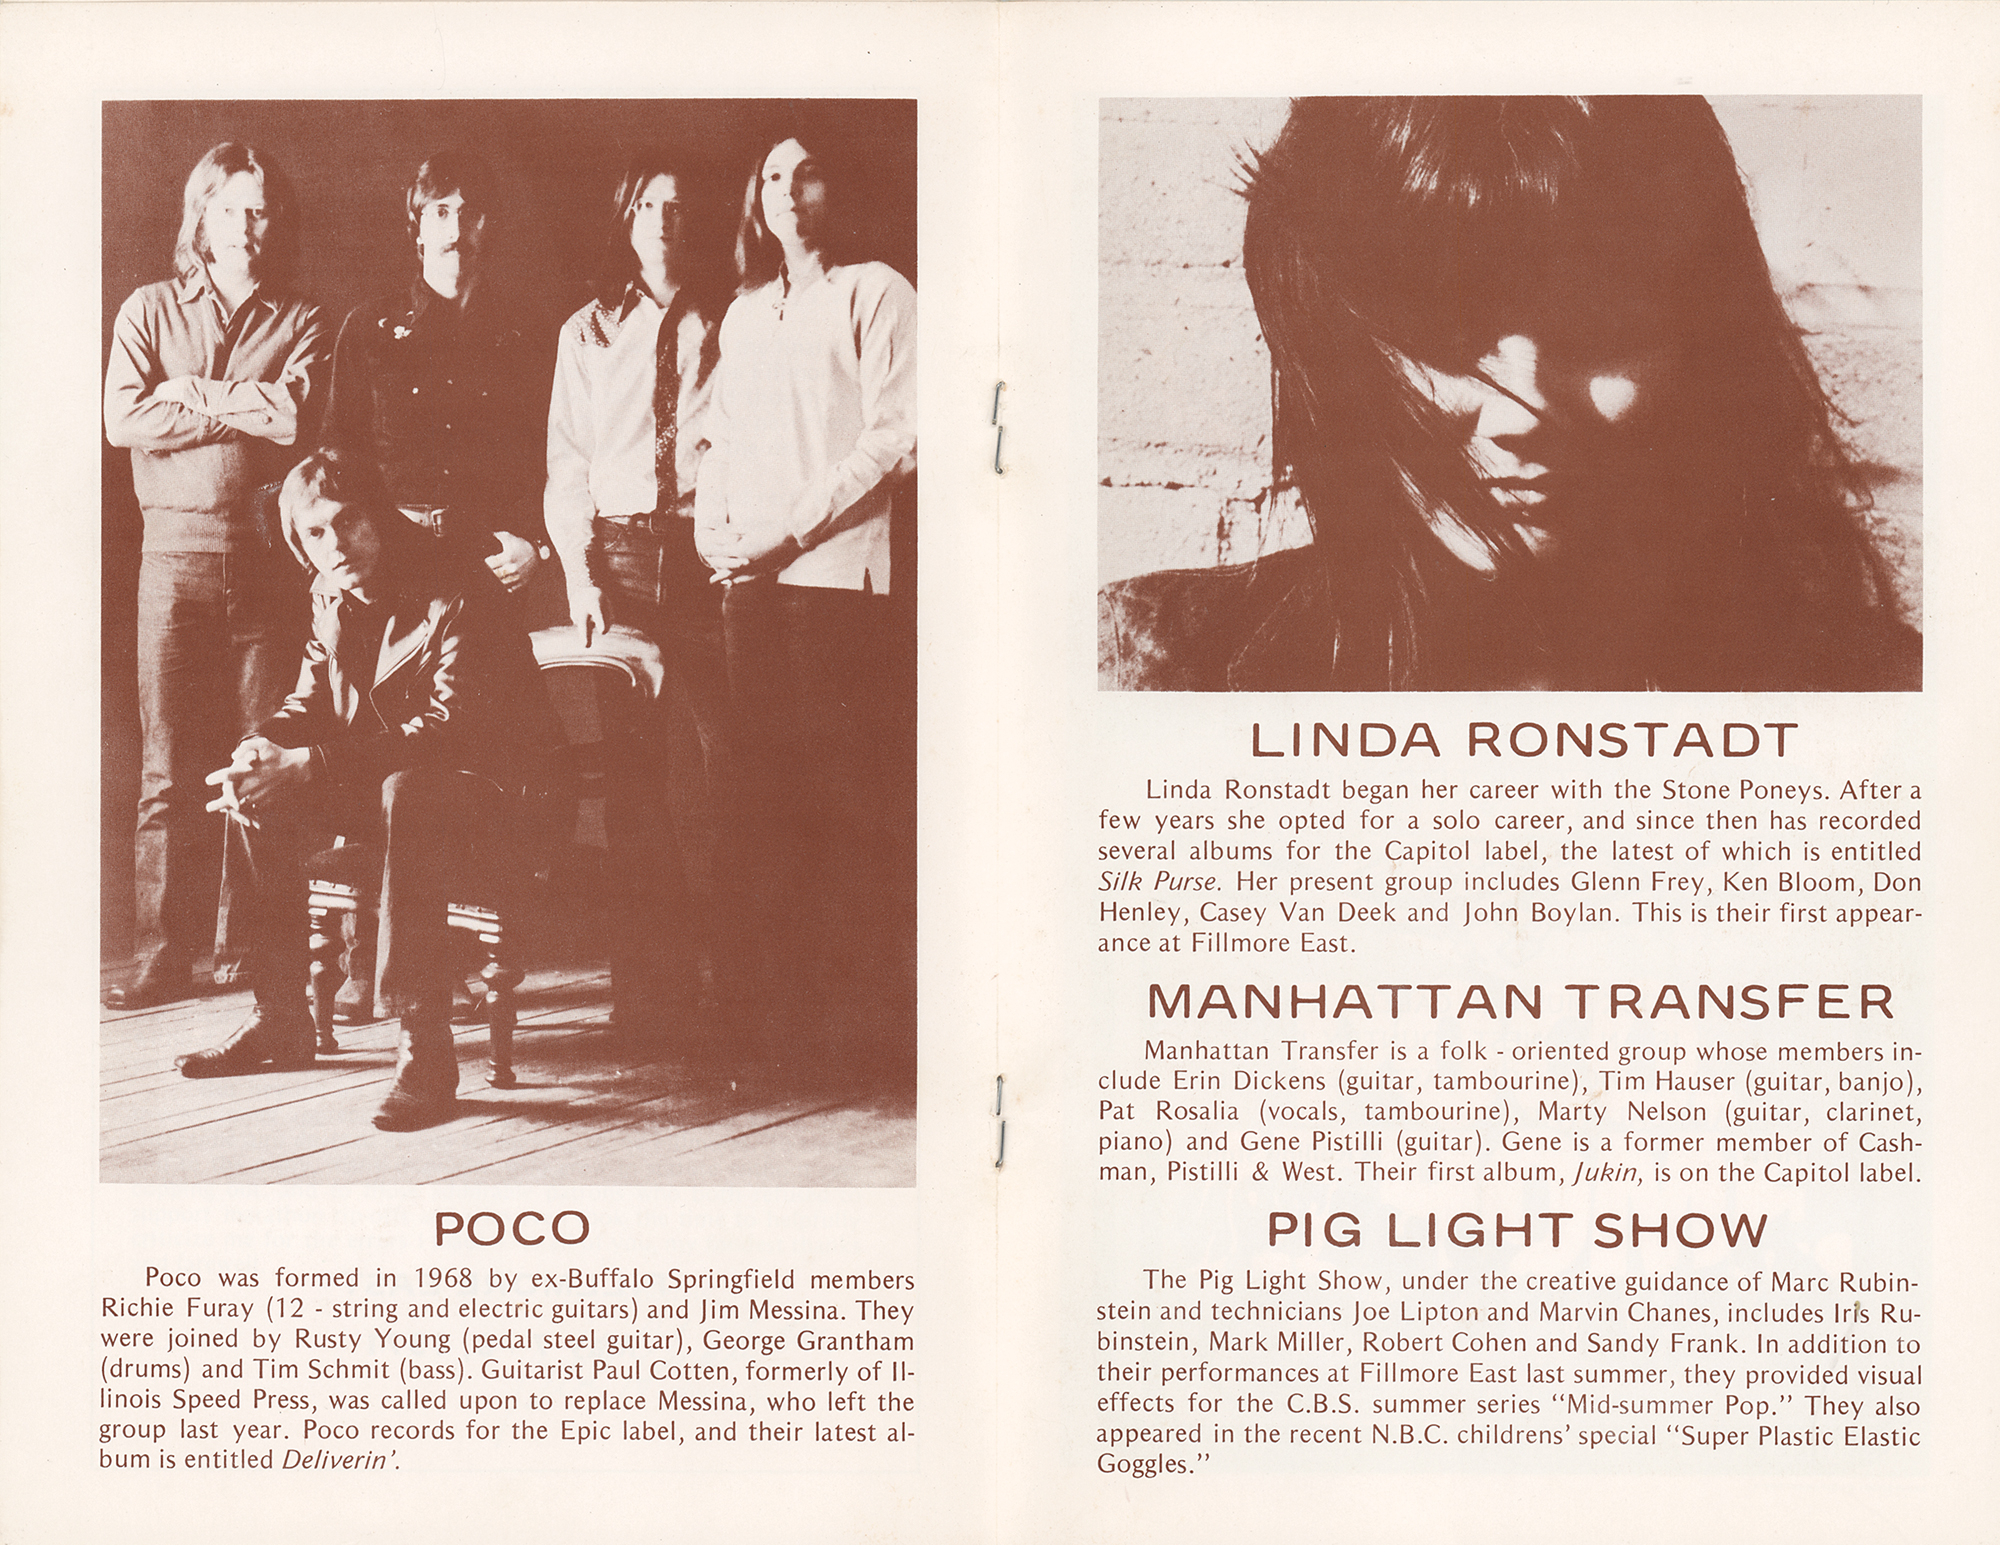 Lot #5287 The Eagles: Glenn Frey, Don Henley, and Linda Ronstadt 1971 Fillmore East Program